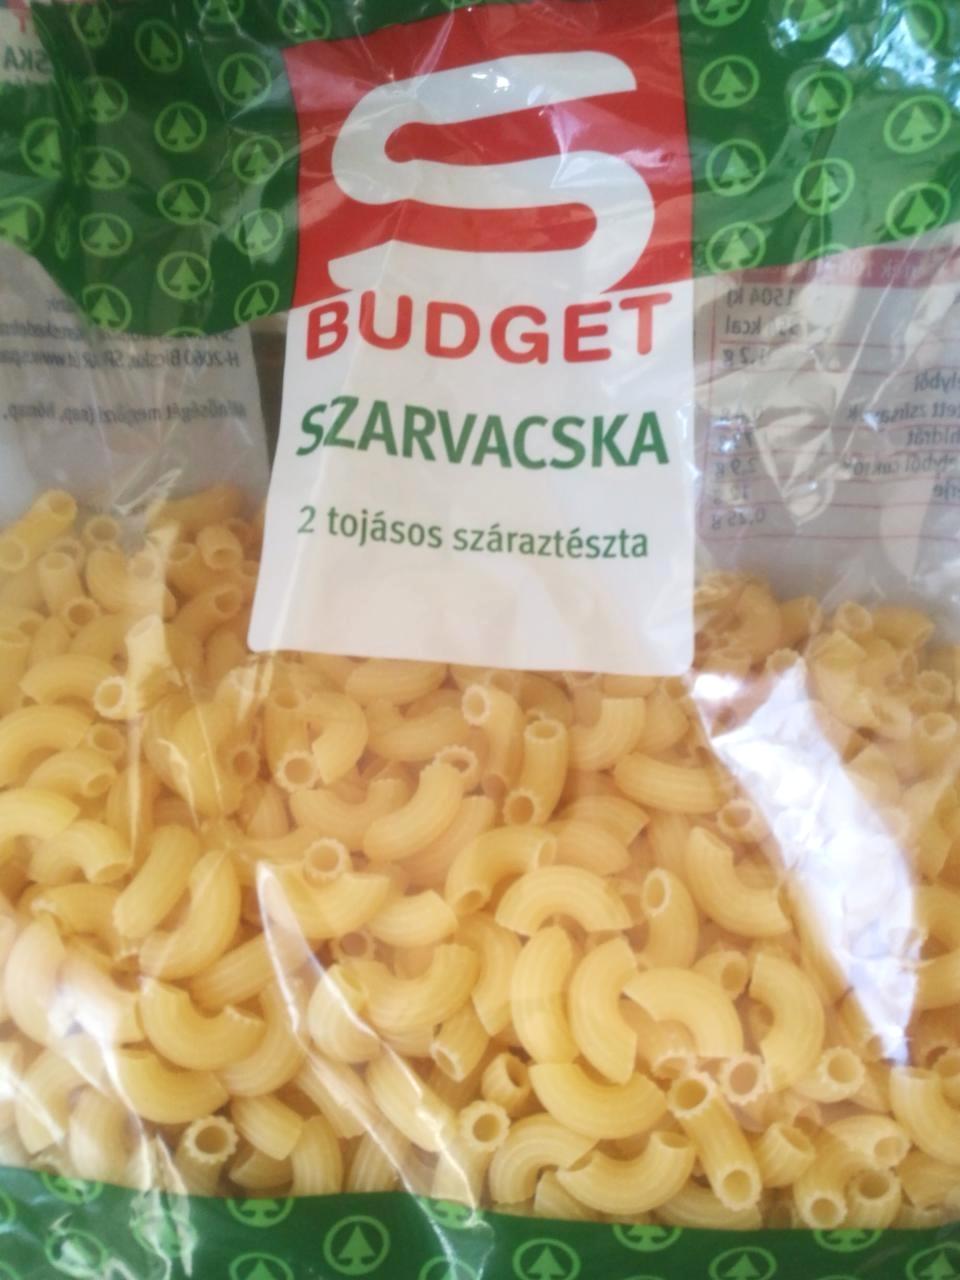 Képek - Szarvacska 2 tojásos száraztészta S Budget